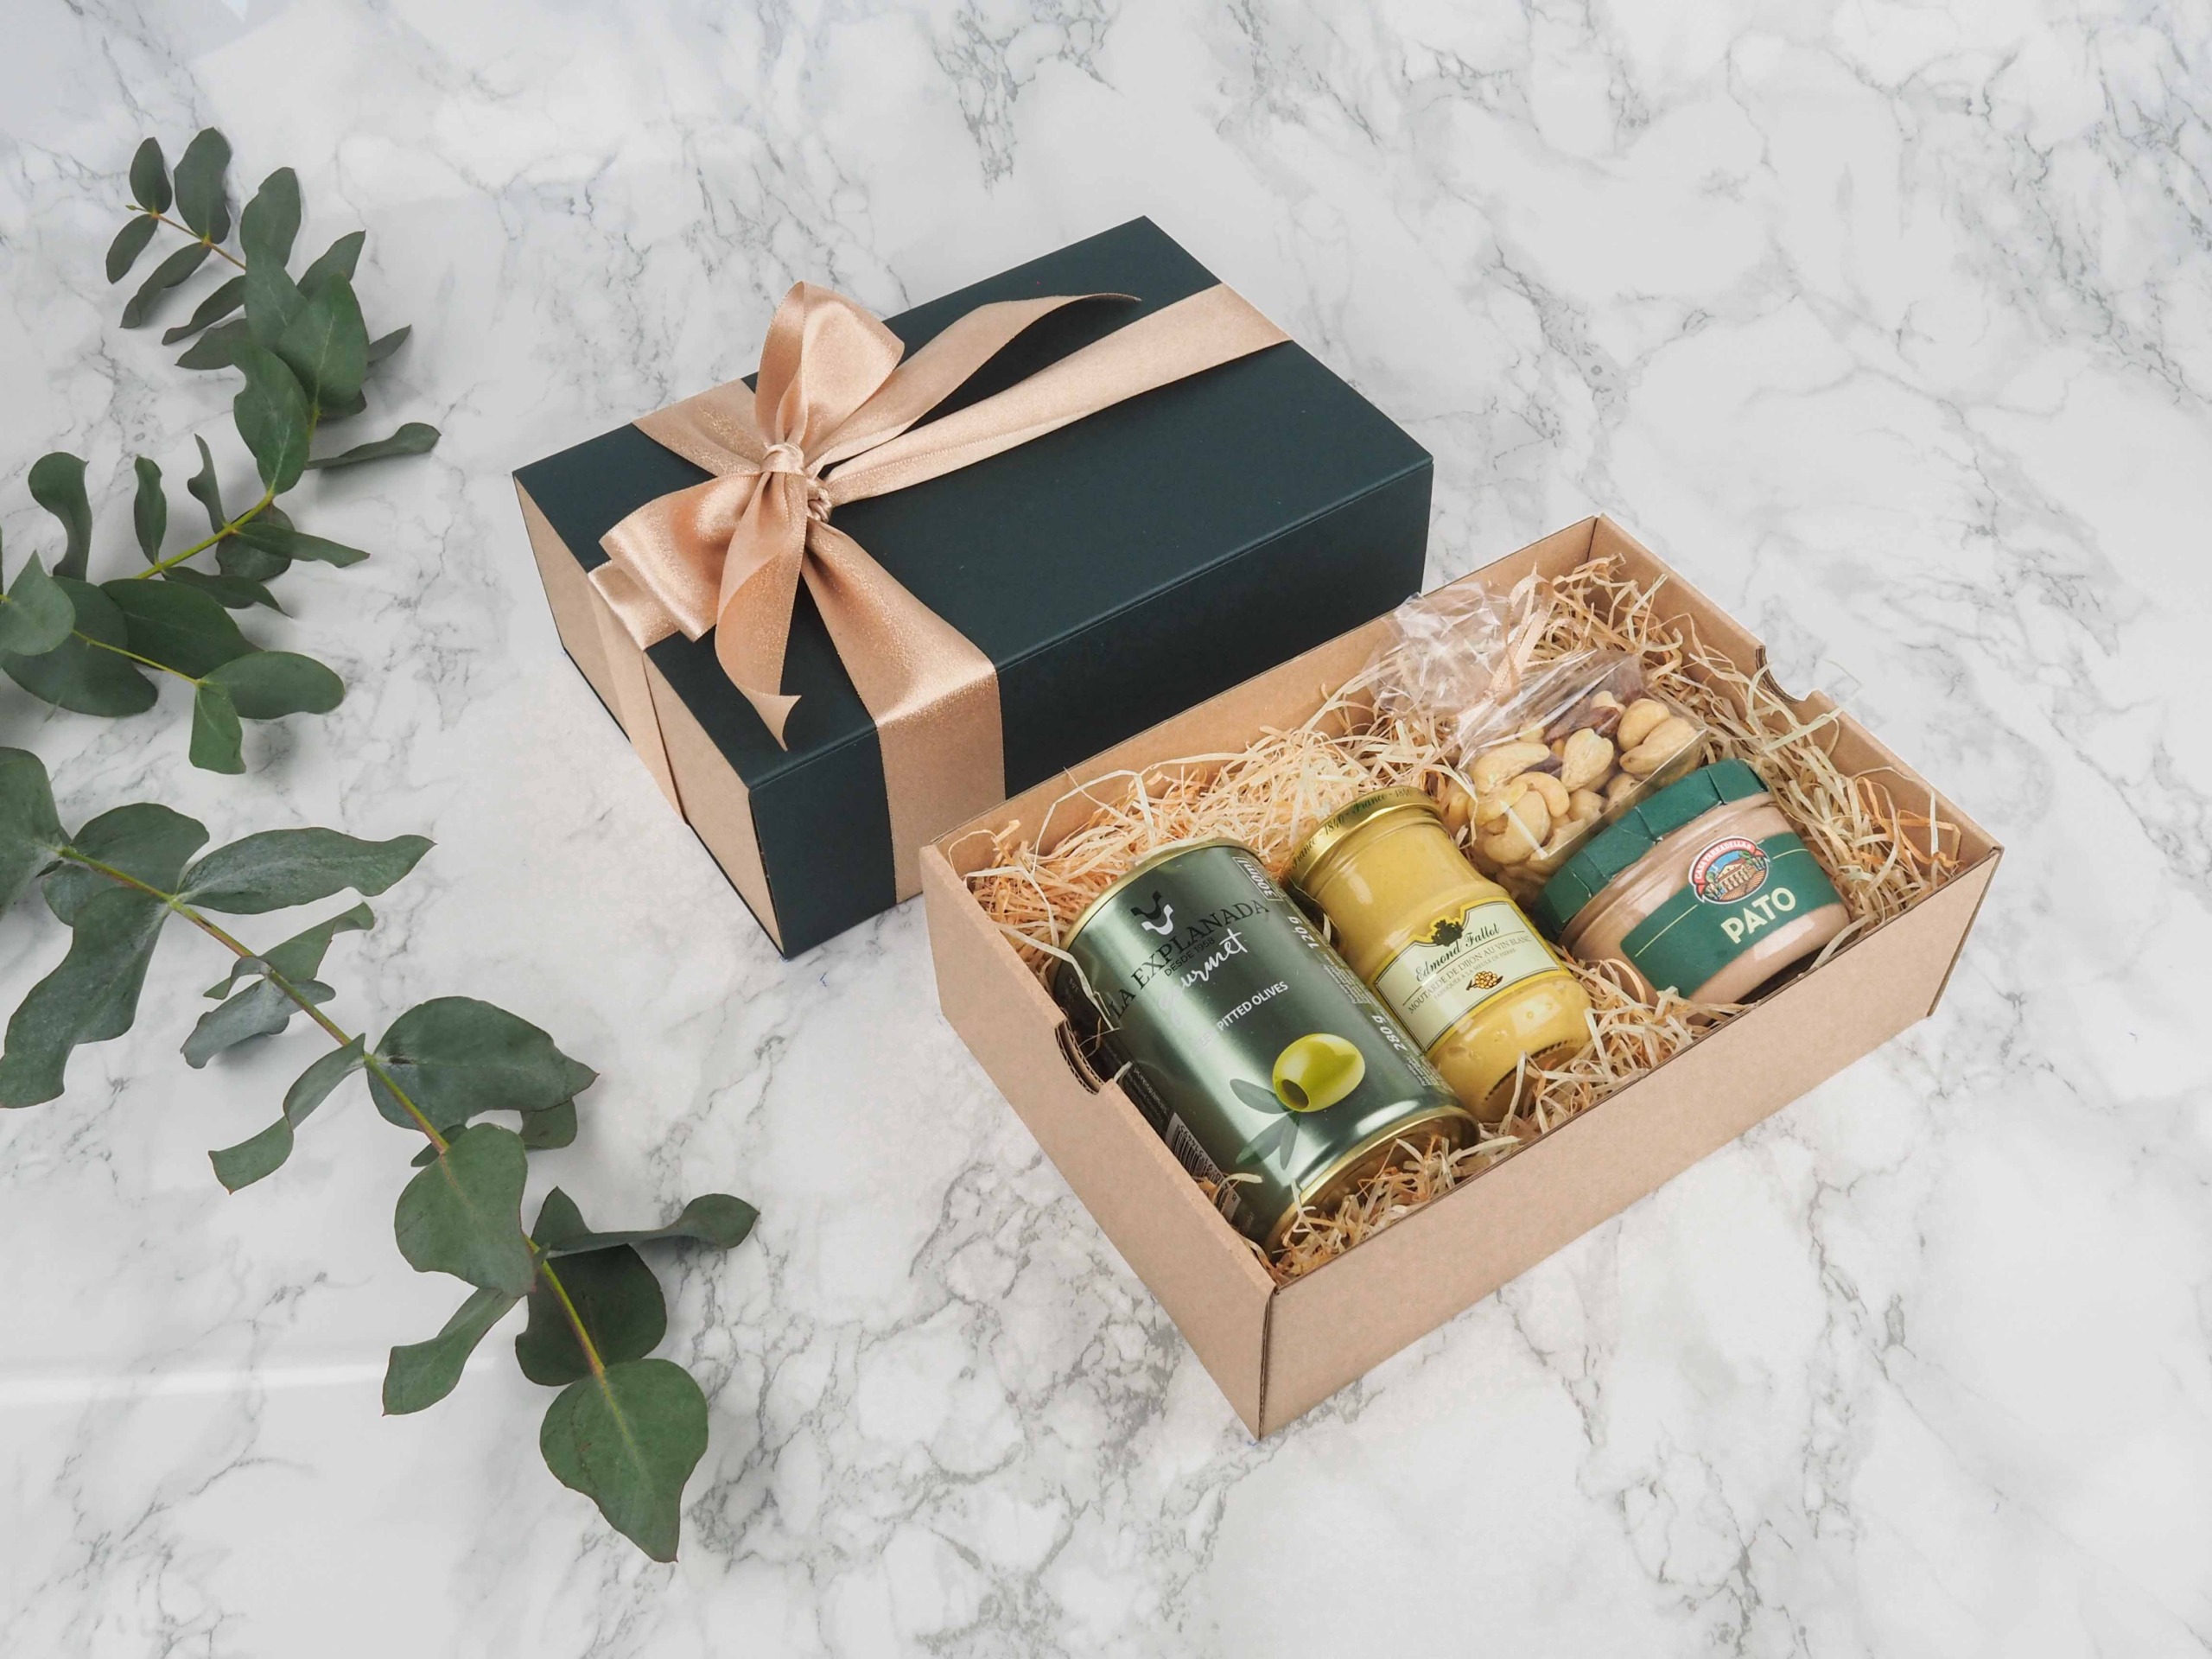 Dárkový balíček Casa Green je speciální svou elegantní vysouvací krabičkou, kterou zdobí atlasová stuha. Dárková krabice v sobě obsahuje zelené olivy bez pecek, dijon francouzskou hořčici, mix oříšků a španělskou vepřovou játrovou paštiku s bylinkami.